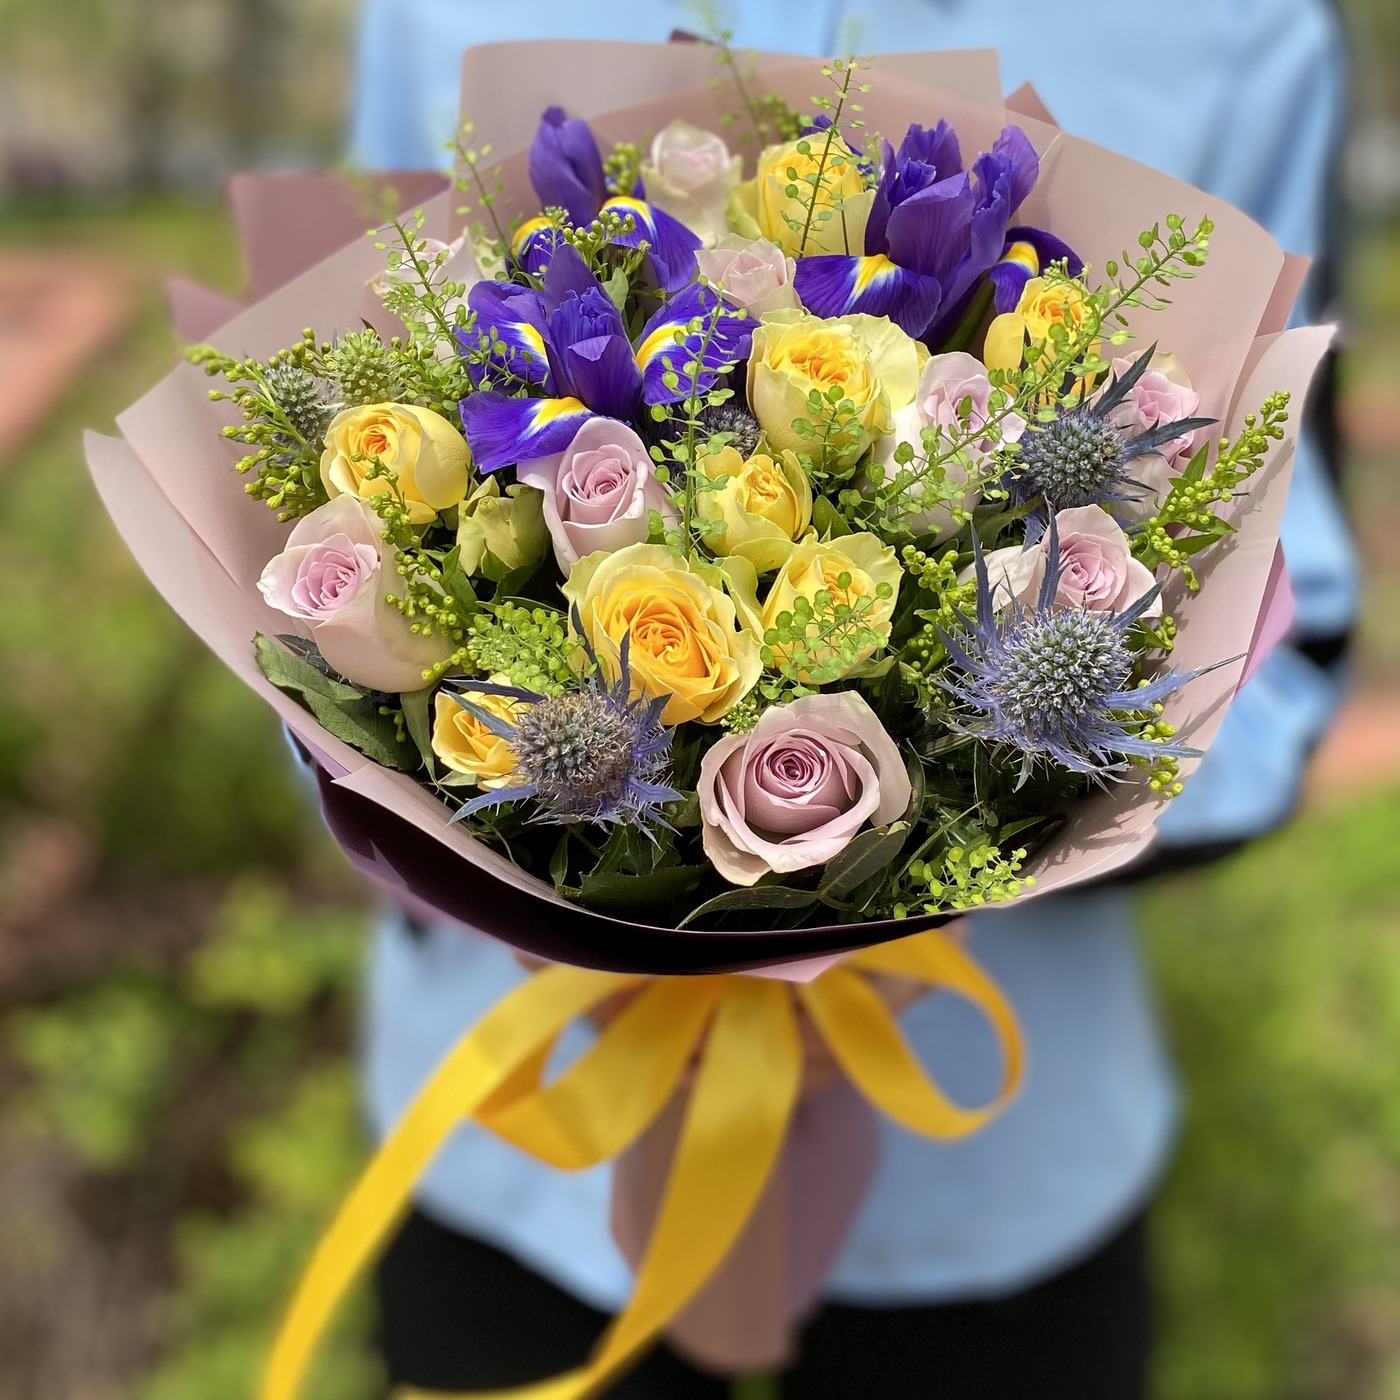 Заказ и доставка цветов от «ЦВЕТЫ МНЕ»: создайте моменты счастья для своих близких